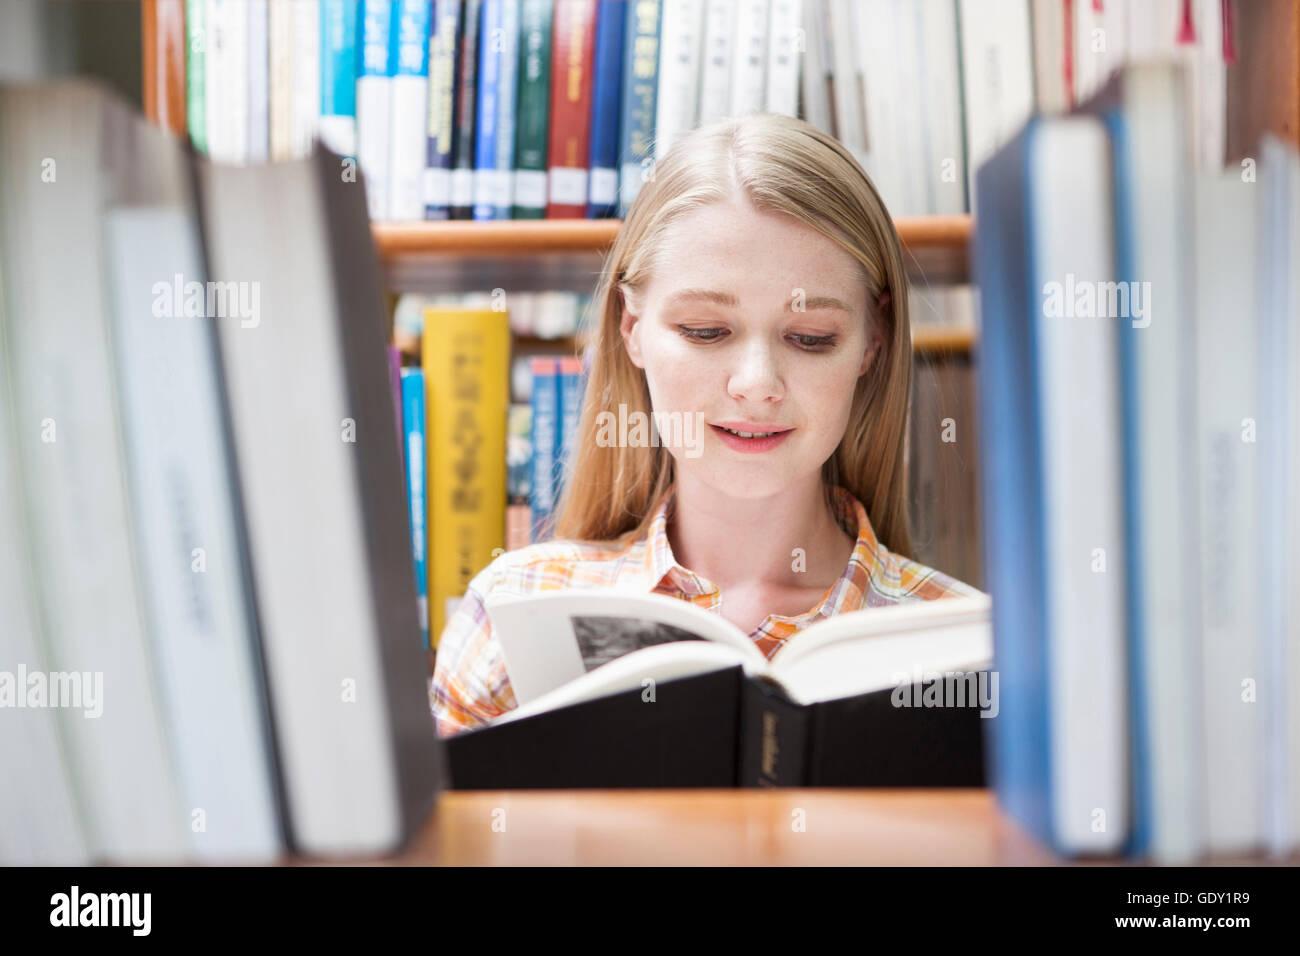 Ritratto di giovane donna studente di college leggendo un libro nella biblioteca Foto Stock